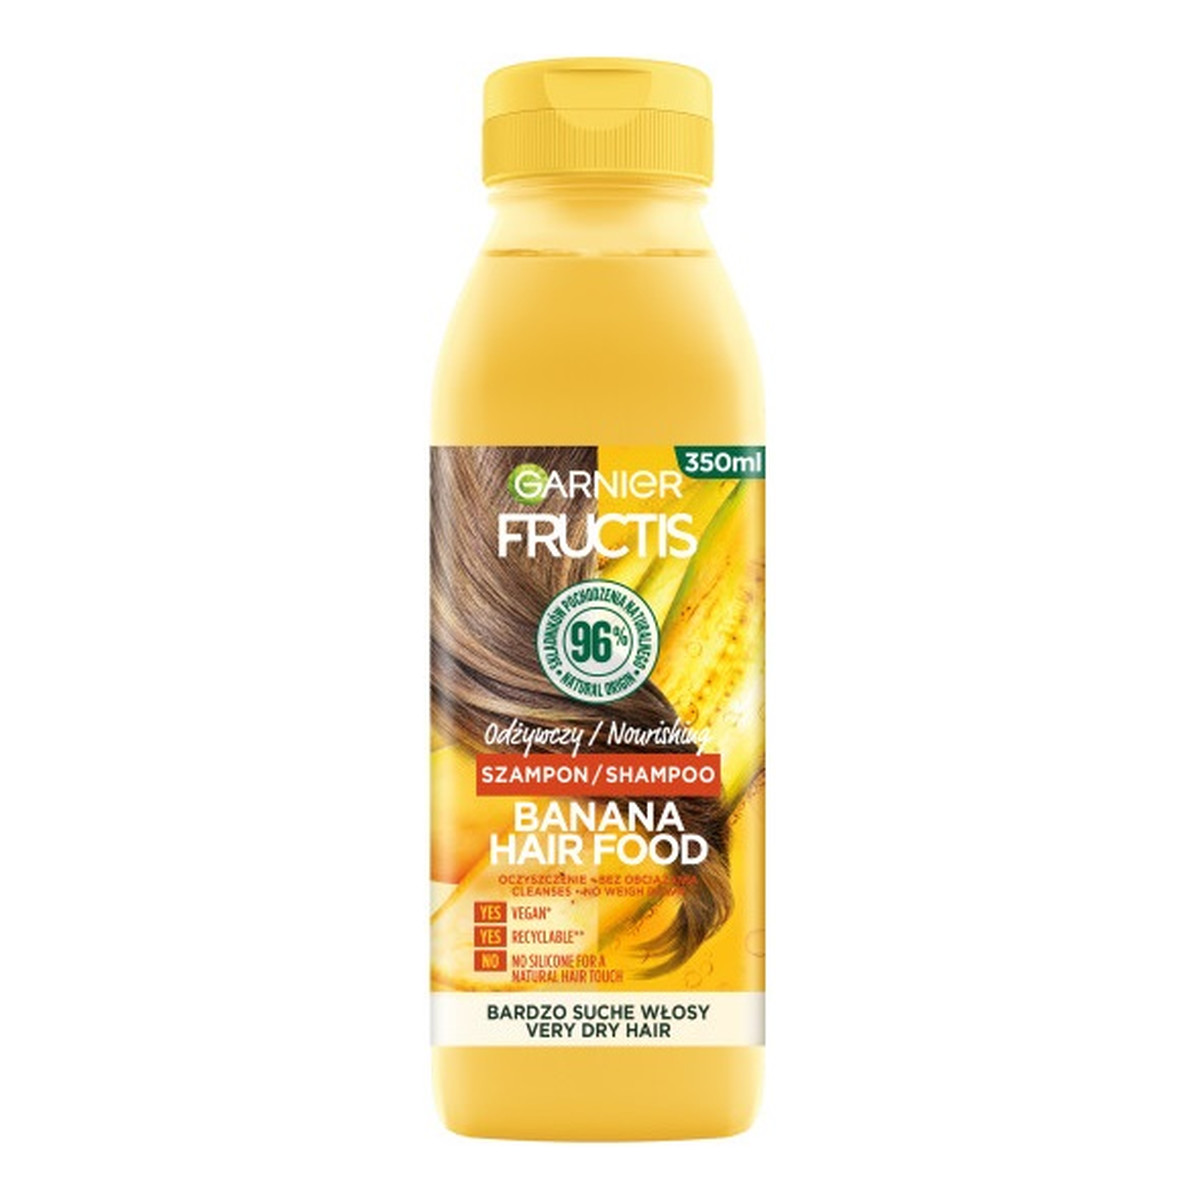 Garnier Fructis banana hair food odżywczy szampon do włosów bardzo suchych 350ml